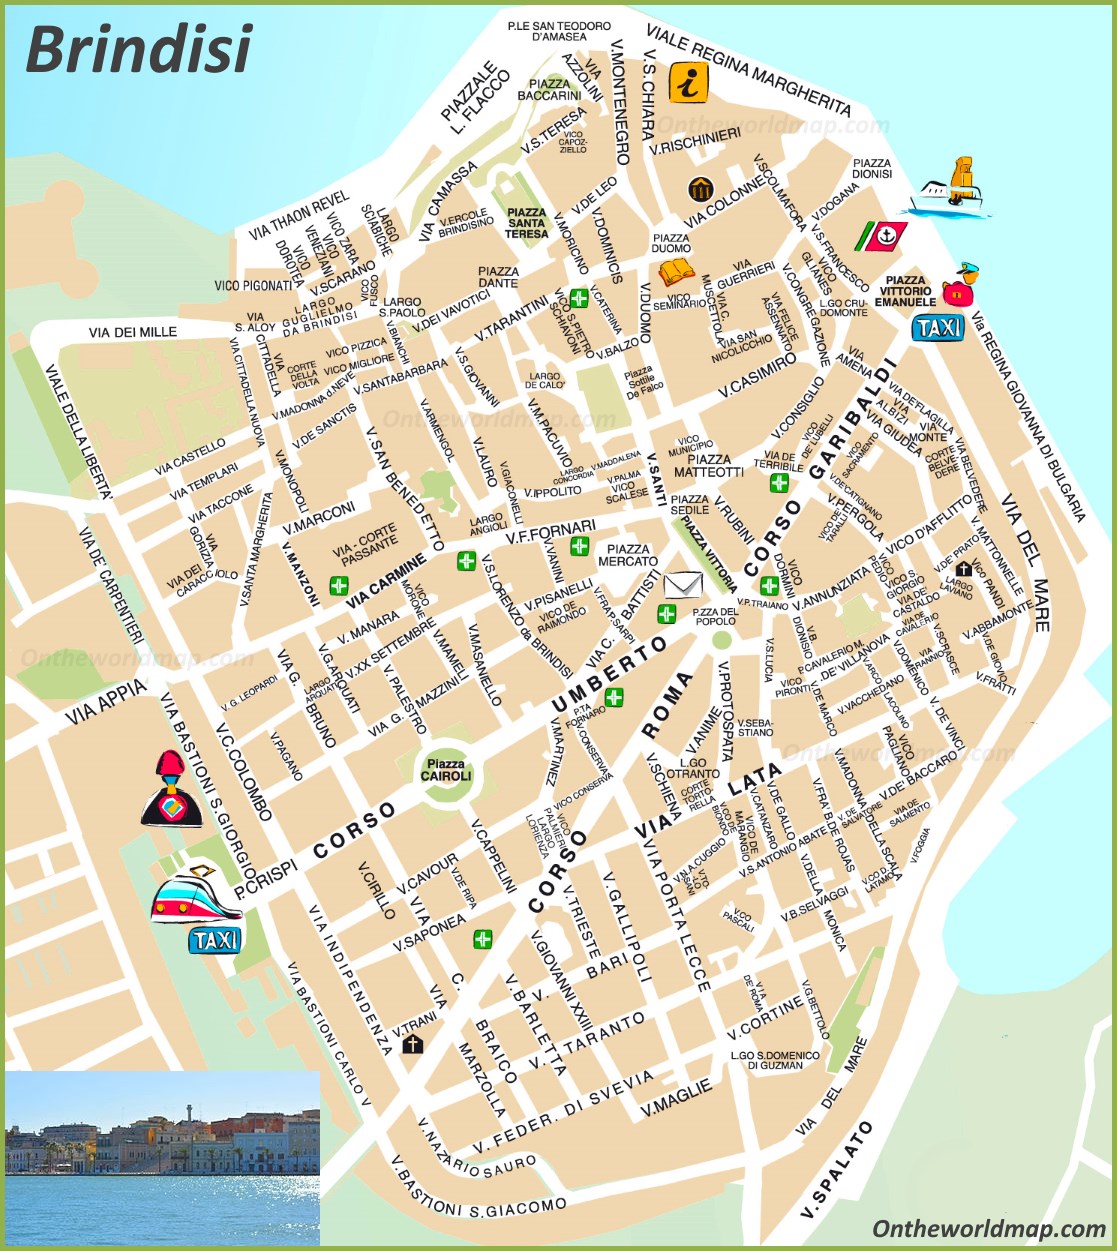 brindisi-tourist-map.jpg